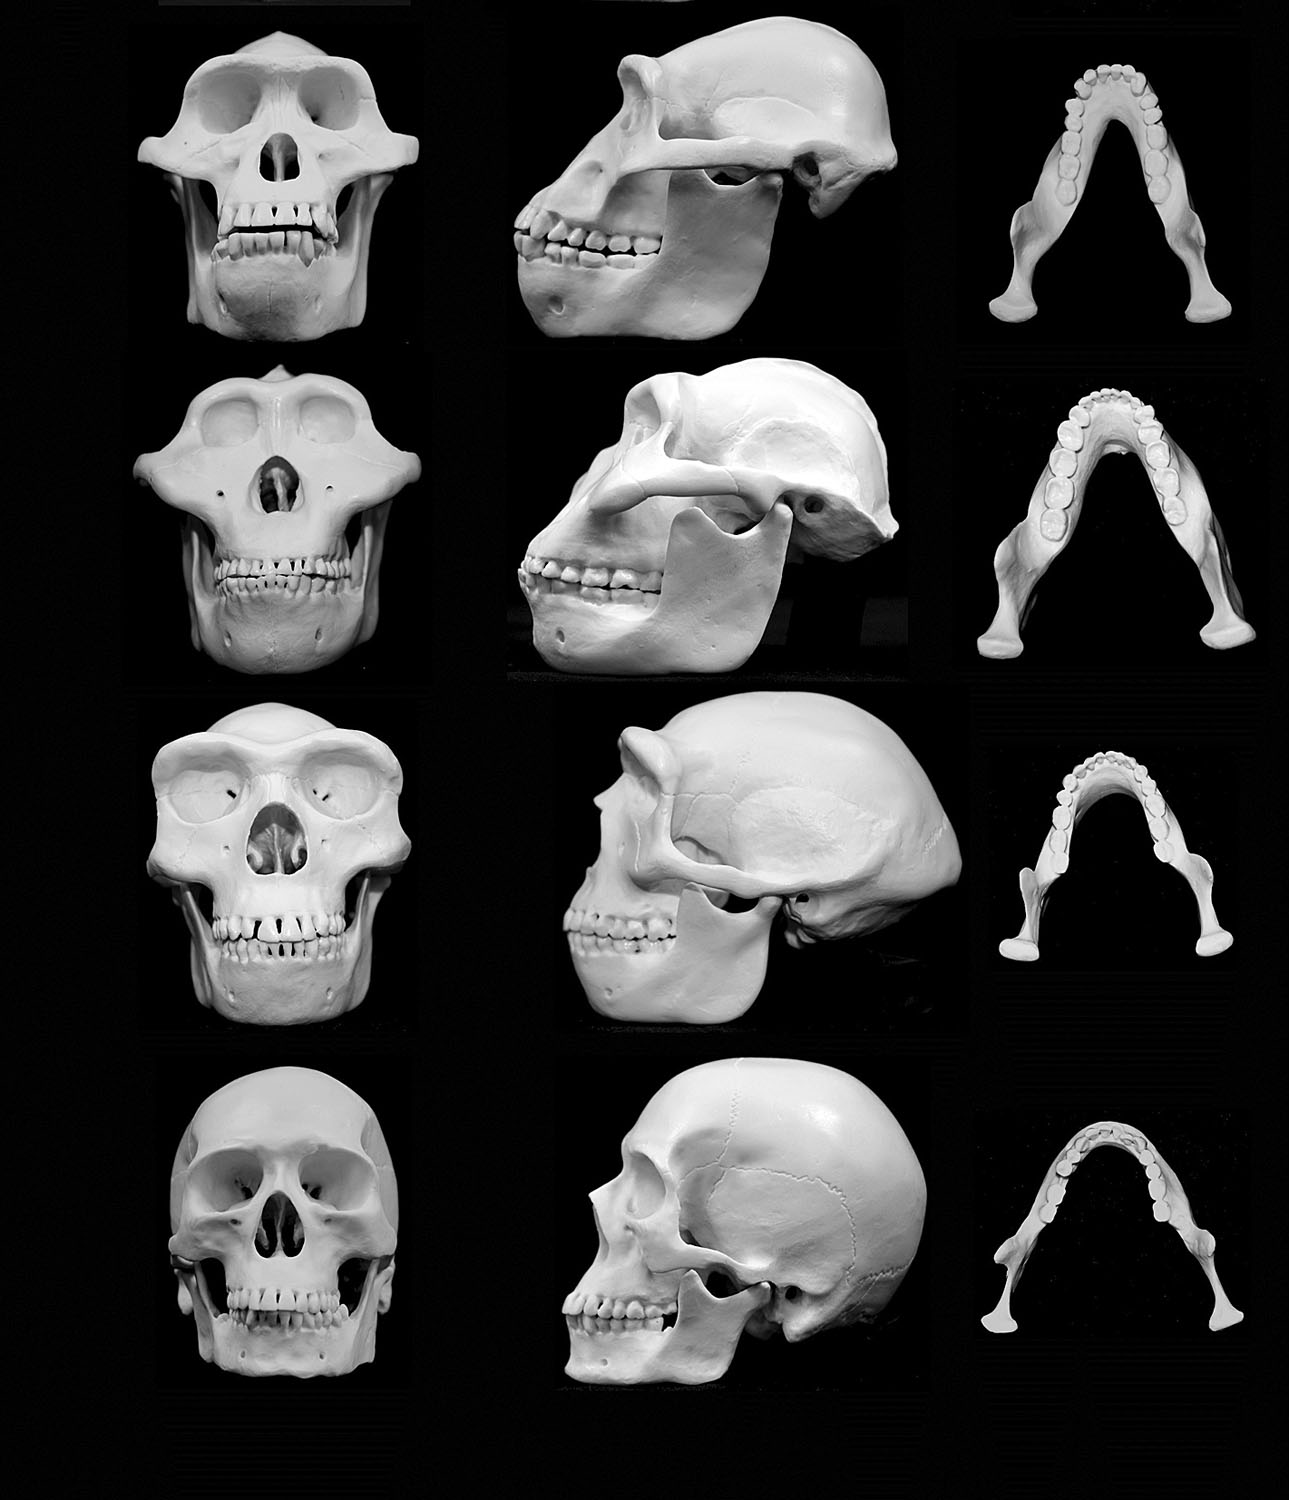 Koponyarekonstrukciók: fentről lefelé a közönséges csimpánzé, a 4,2 millió éve megjelent Australopithecus afarensisé; az 1,8 millió éve megjelent Homo erectusé és a 200 000 éve megjelent Homo sapiensé